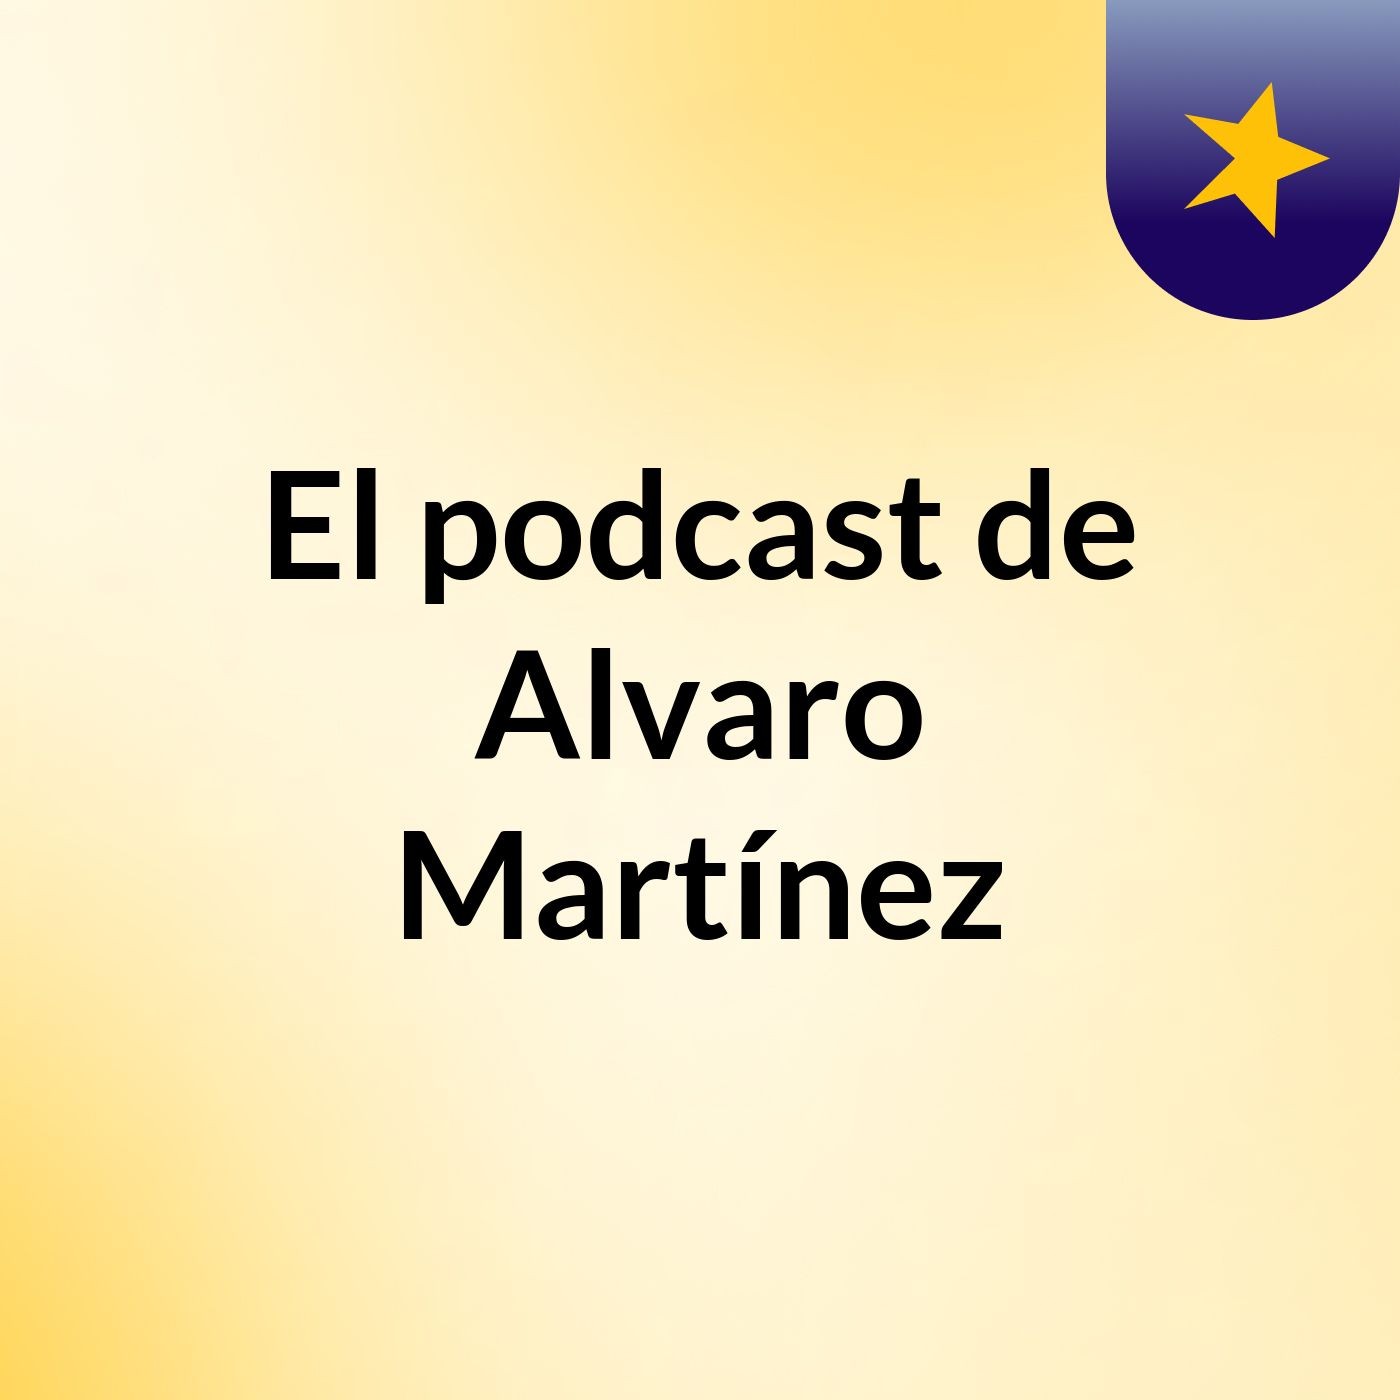 El podcast de Alvaro Martínez